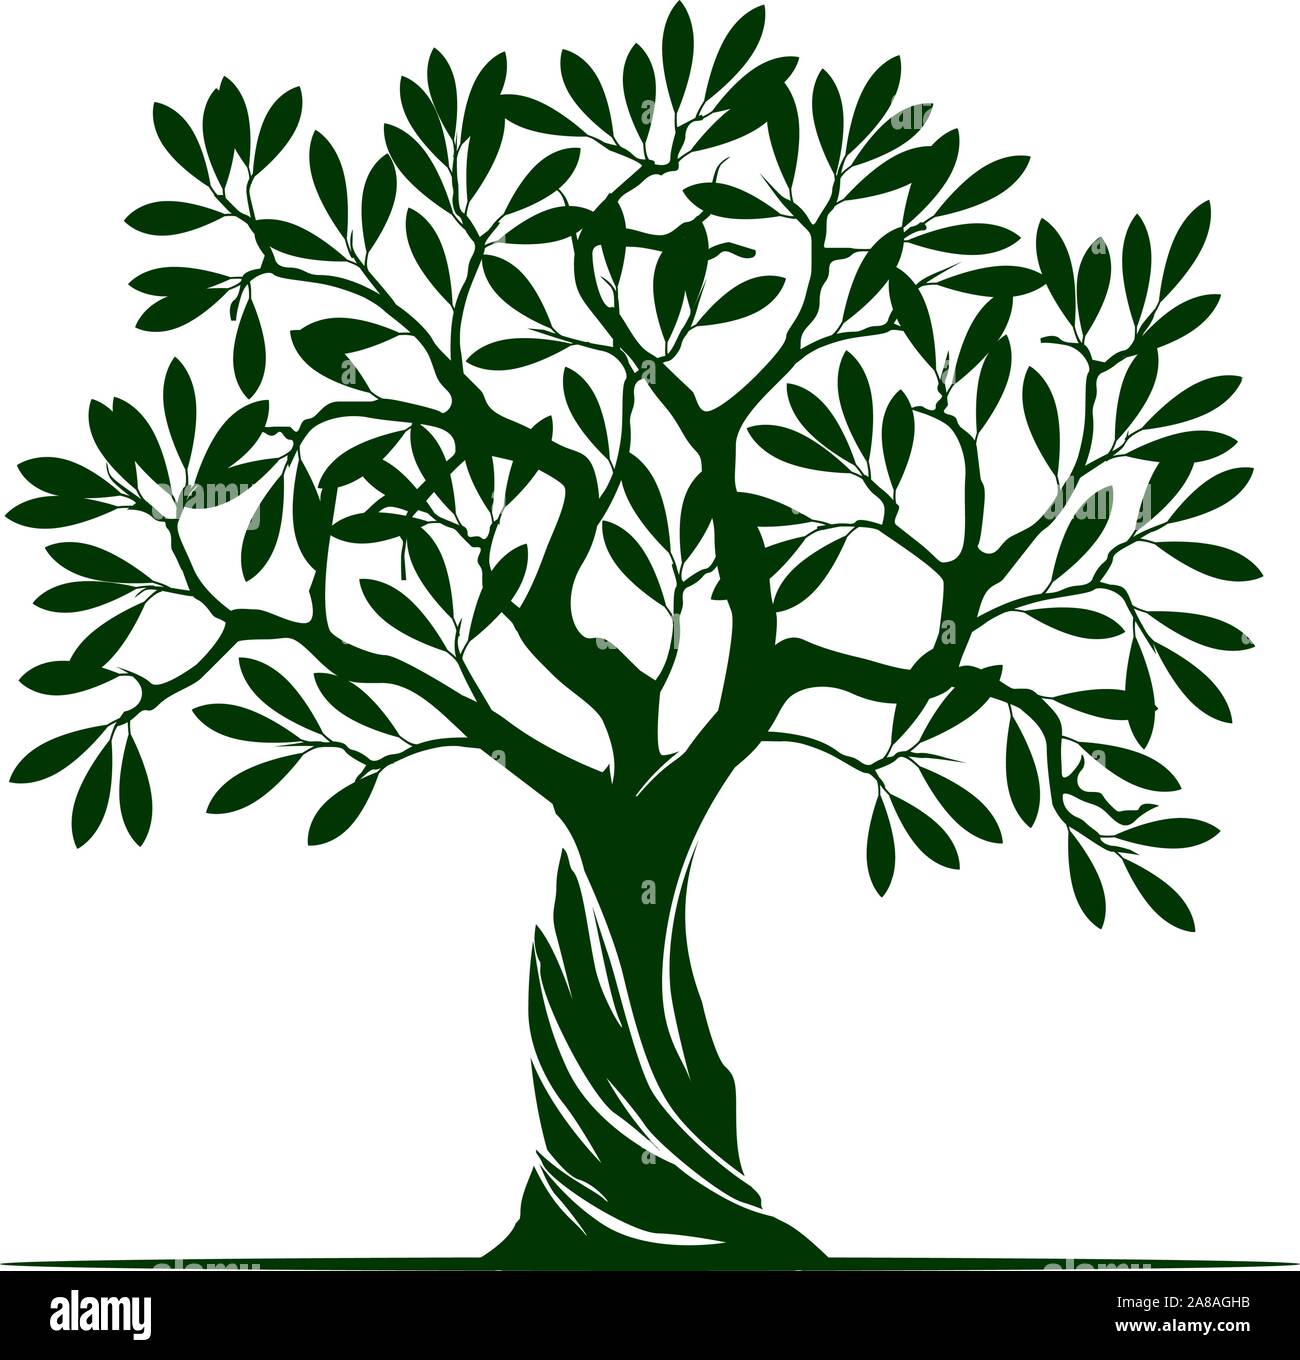 Black Olive Tree n sfondo bianco. Illustrazione Vettoriale e concetto pittogramma. Impianto in giardino. Illustrazione Vettoriale